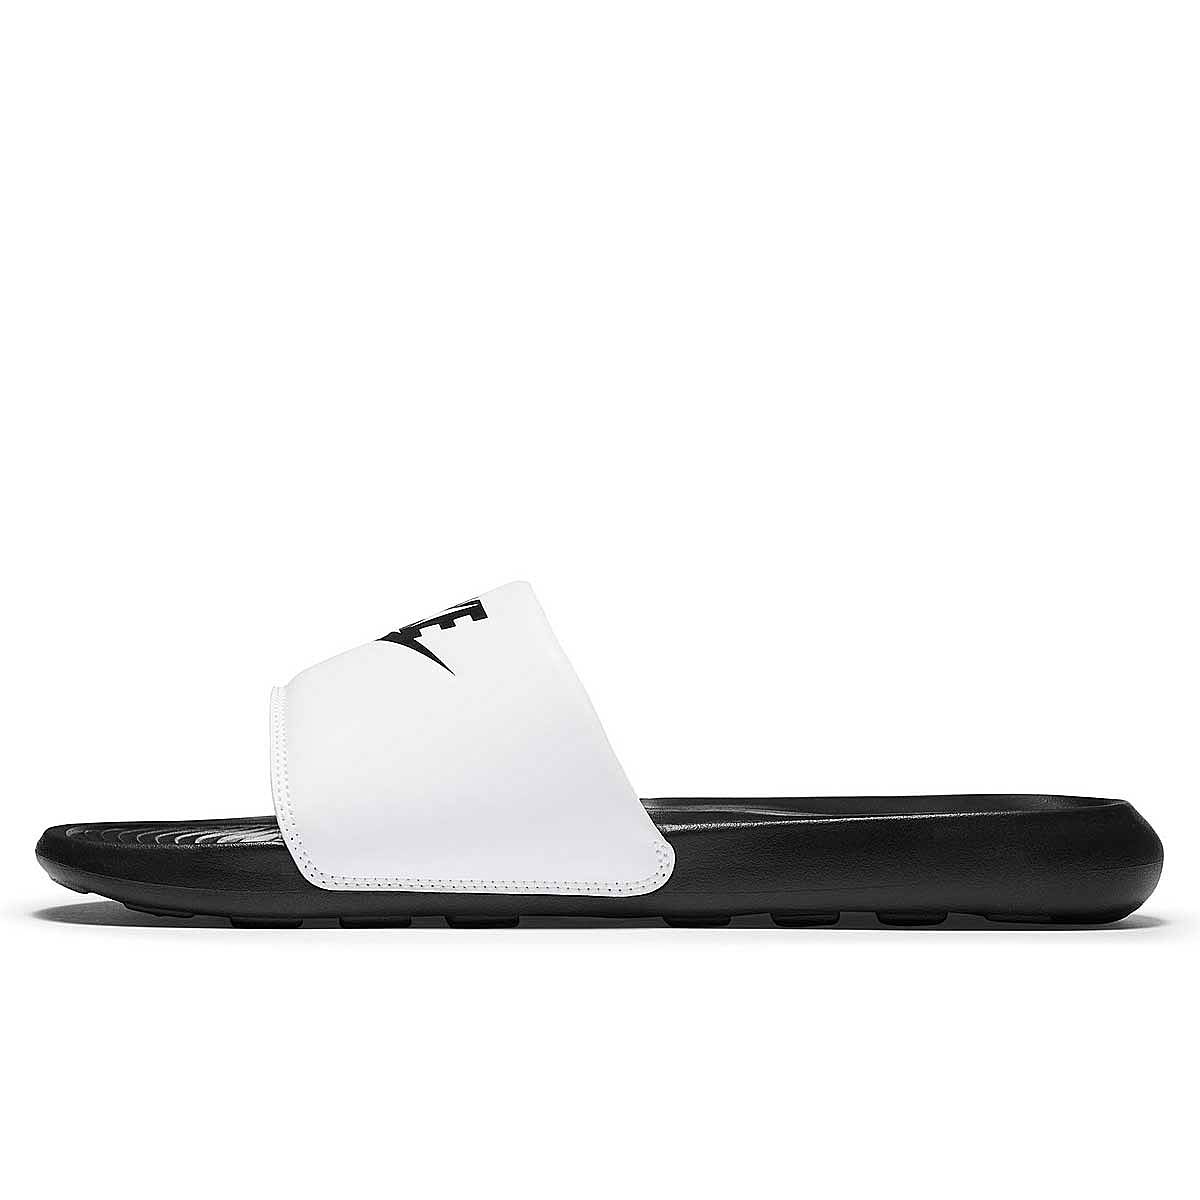 Nike Victori One Slide, Schwarz/schwarz-weiß EU48 1/2